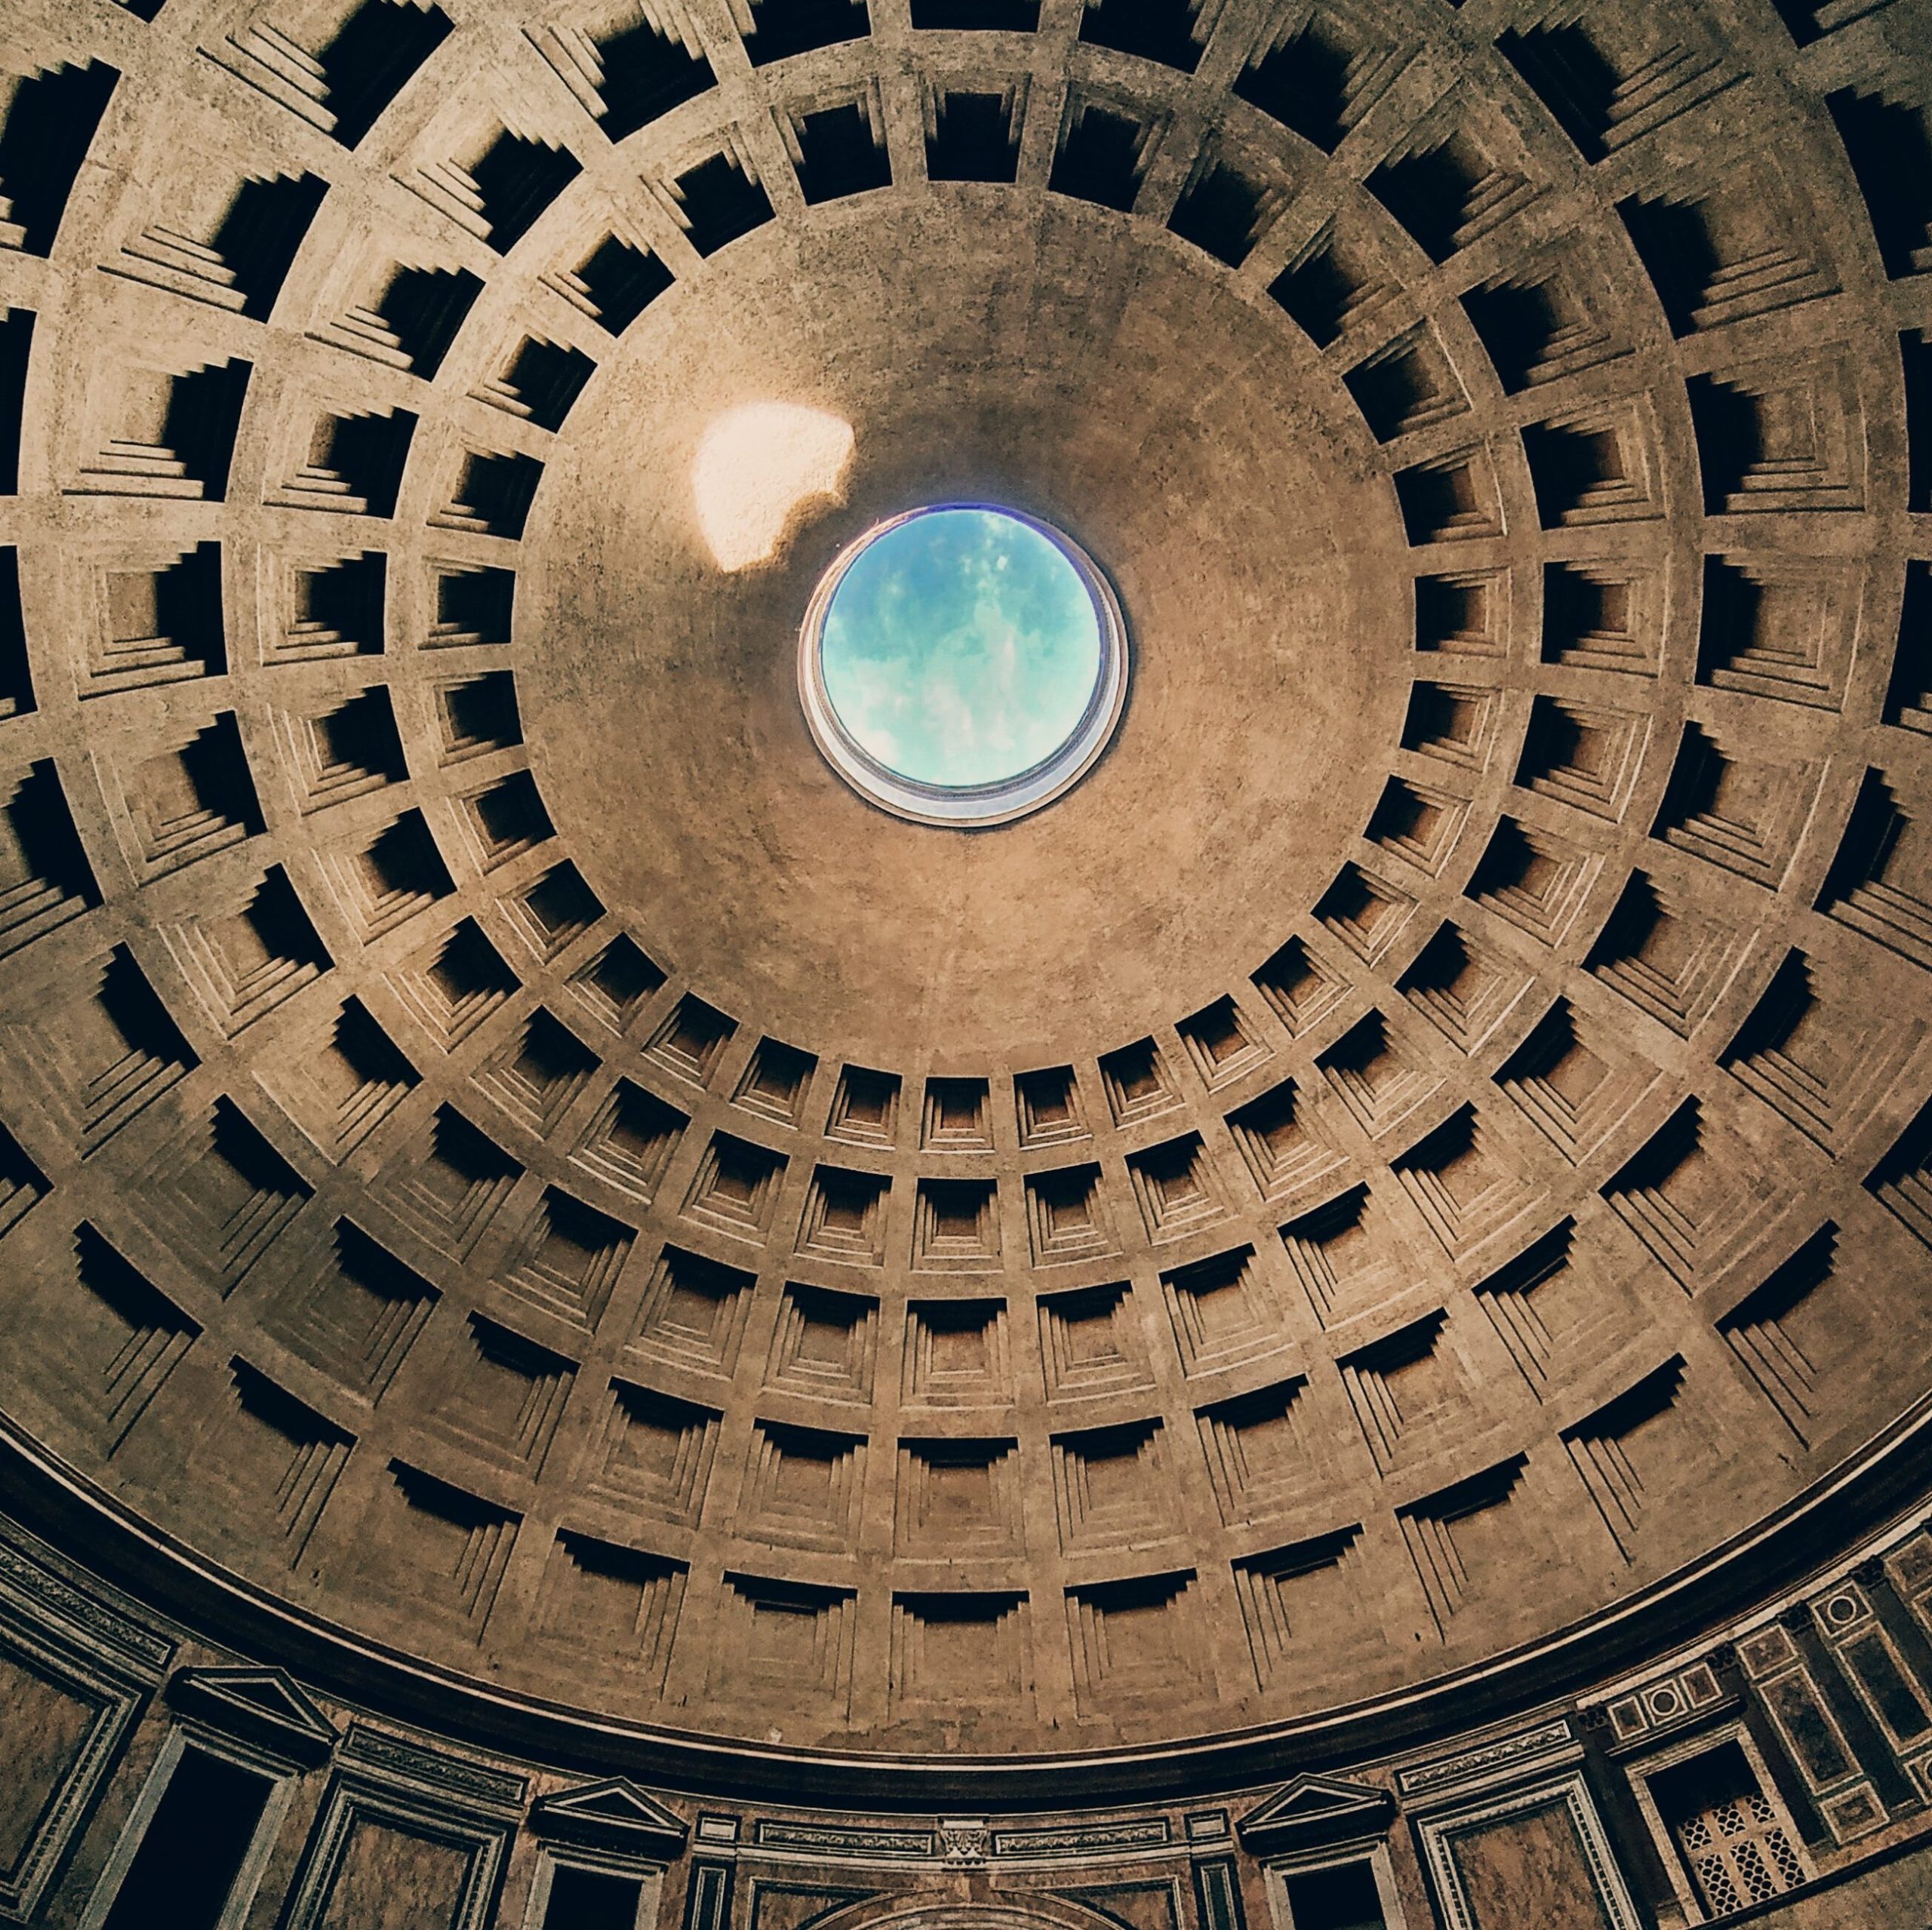 Oculus van het pantheon rome, gat in het dak